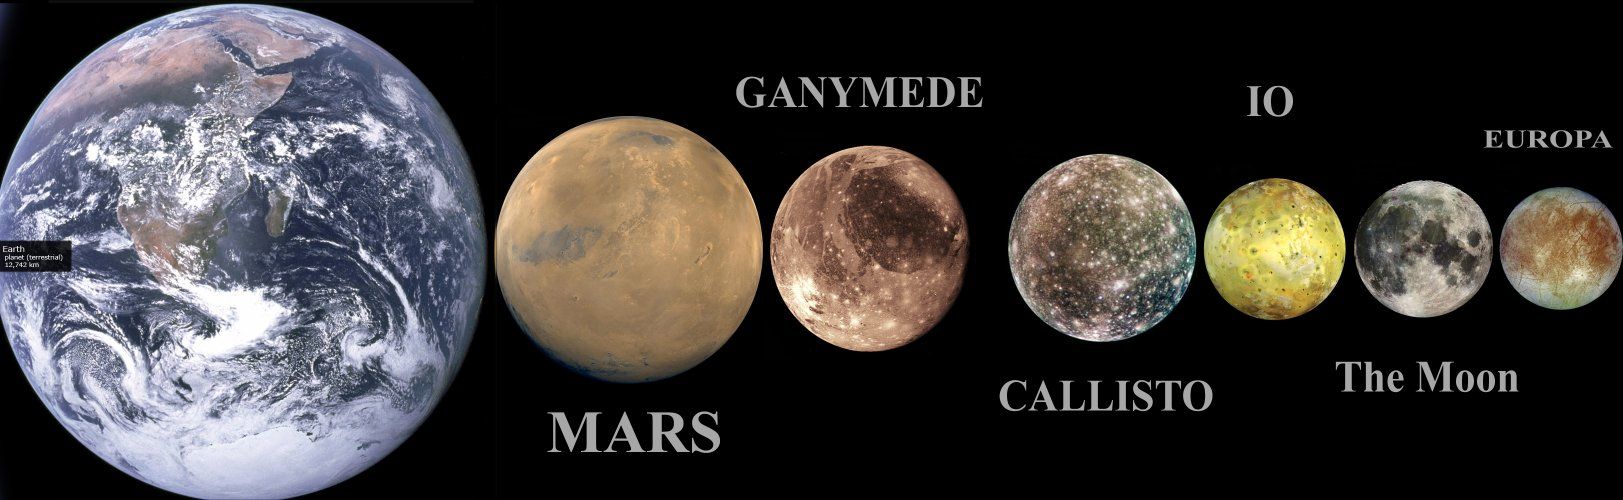 Размерите на Ганимед, сравнени с тези на Марс и Земята